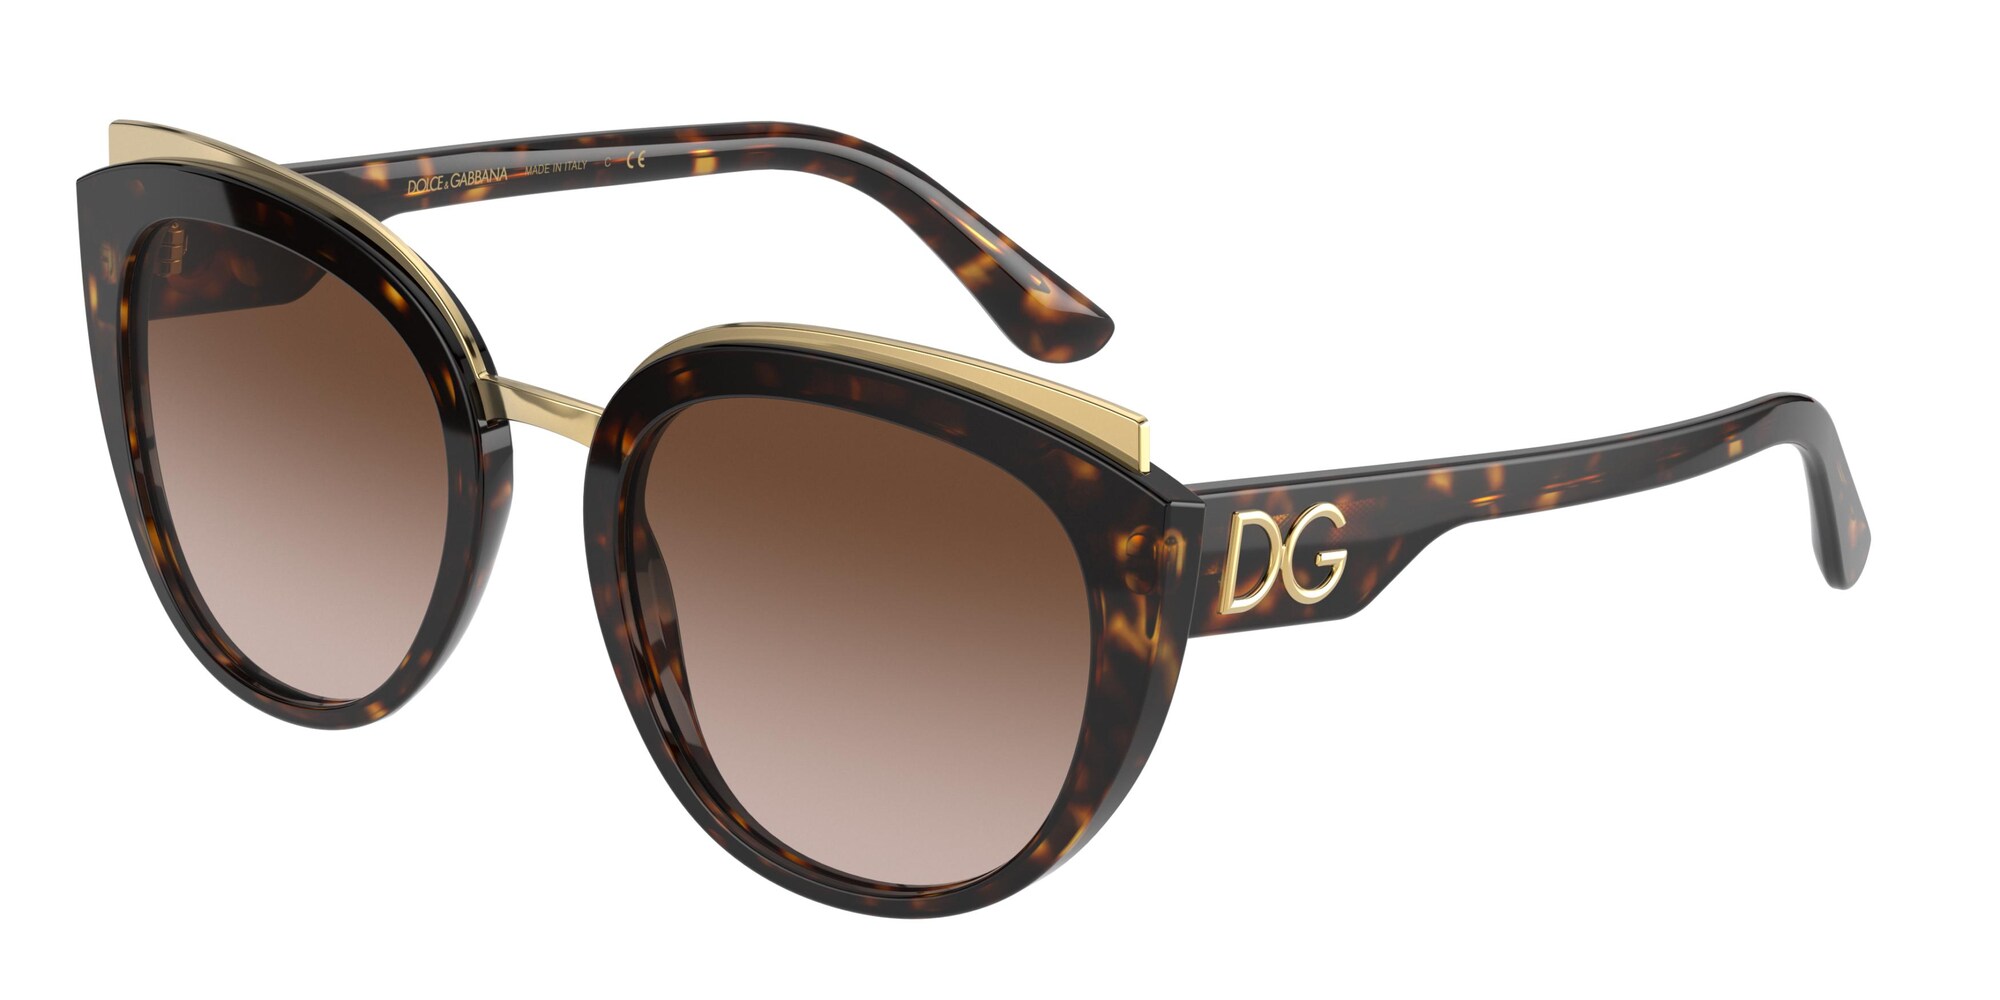 Dolce&Gabbana DG4383 502/13